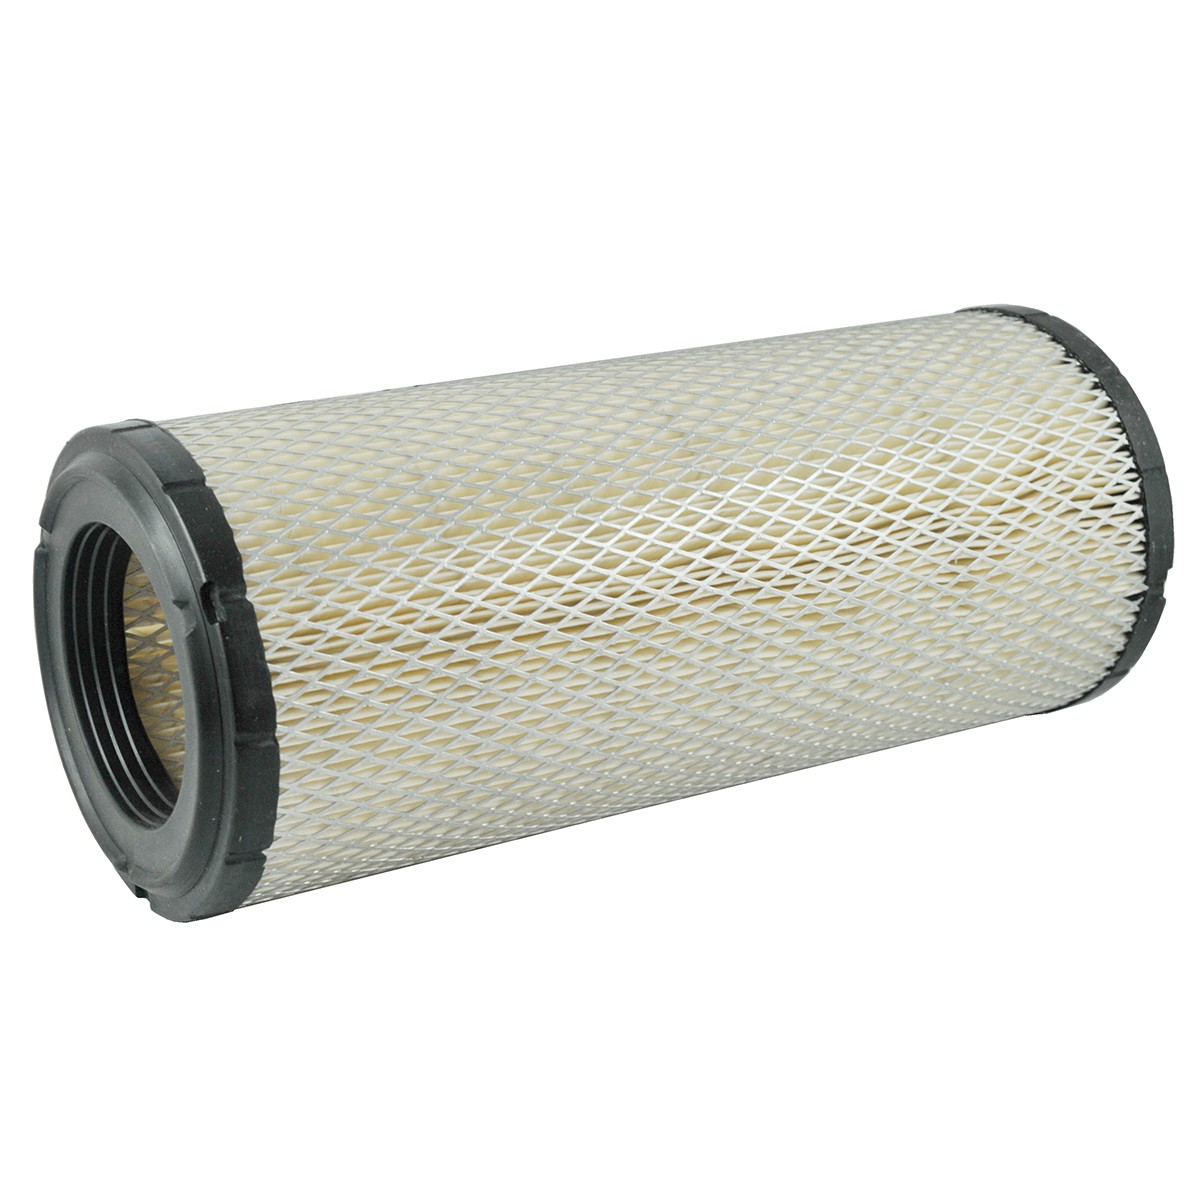 Kubota vzduchový filter M / 321 x 137 mm / 59800-26110 / 6-01-102-07 / SA 16683